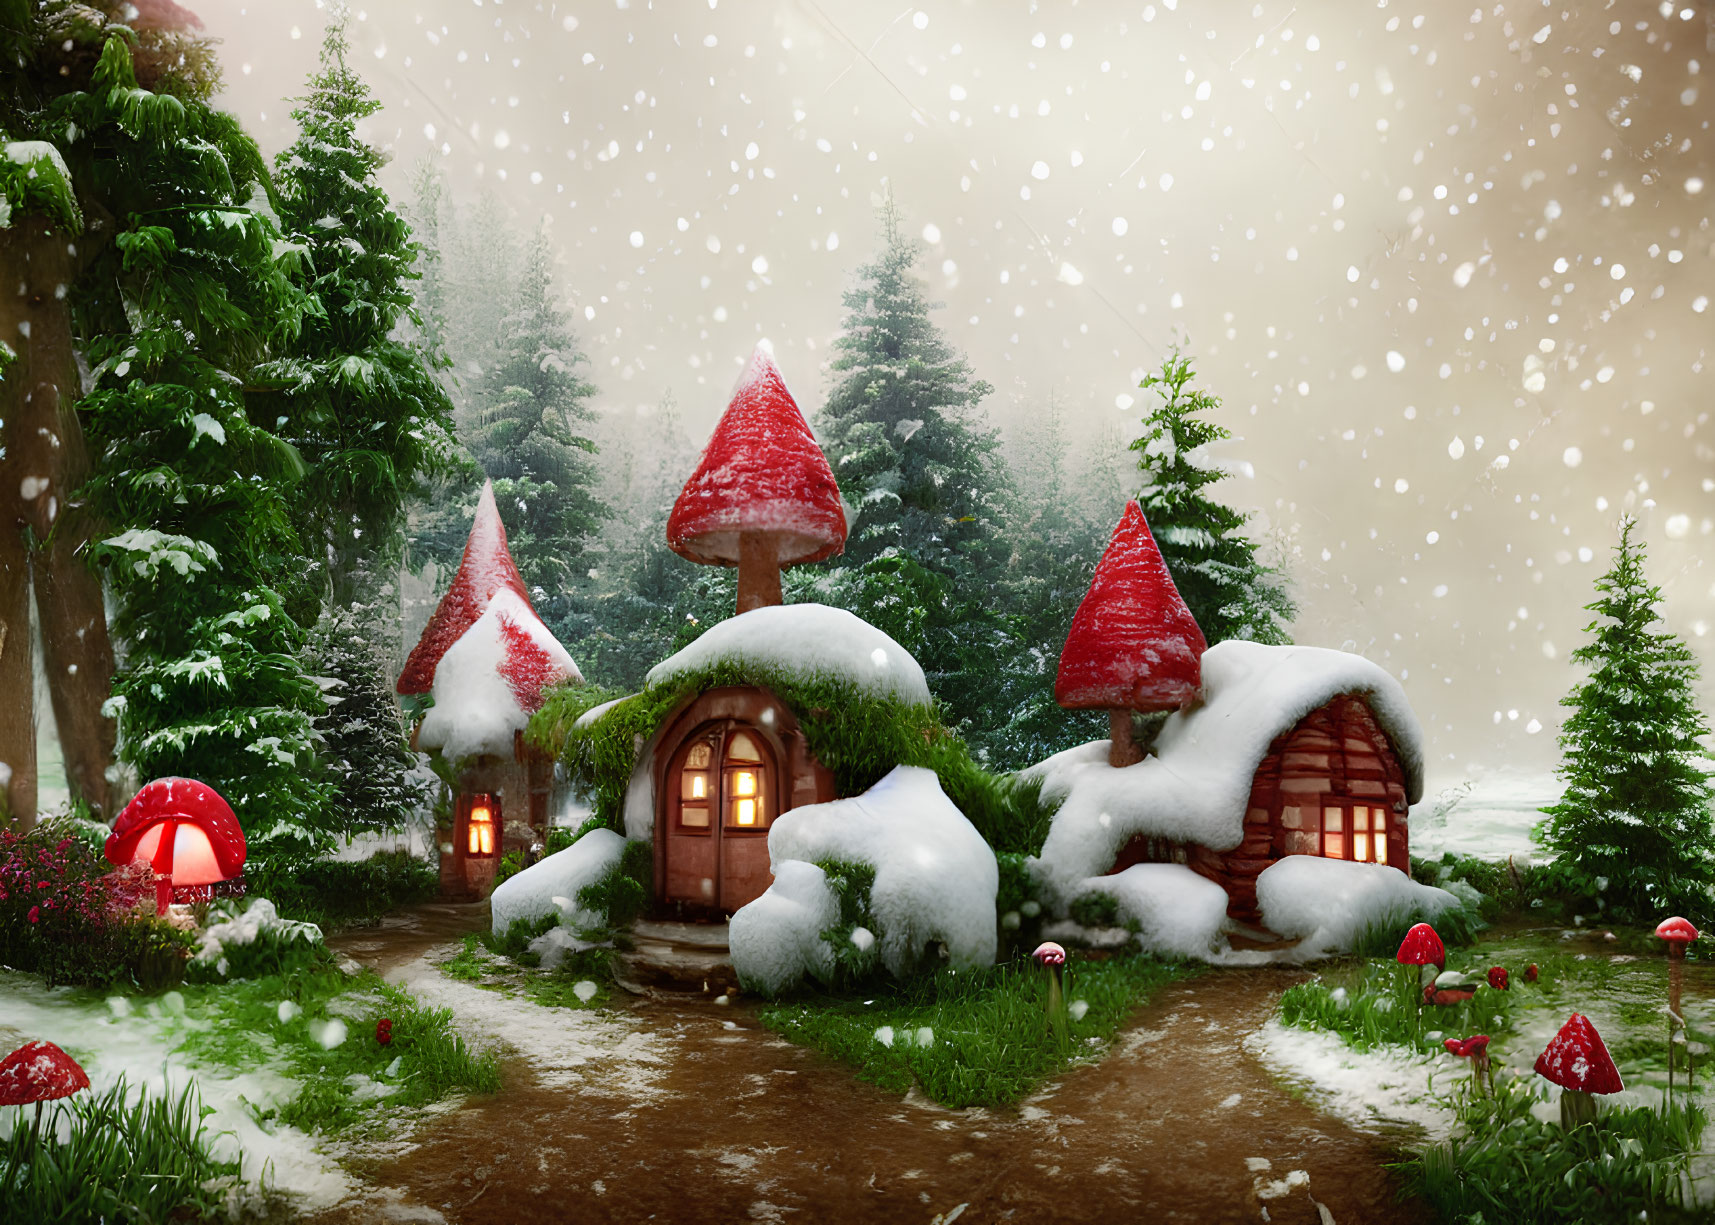 Snow-covered mushroom houses in enchanting winter scene